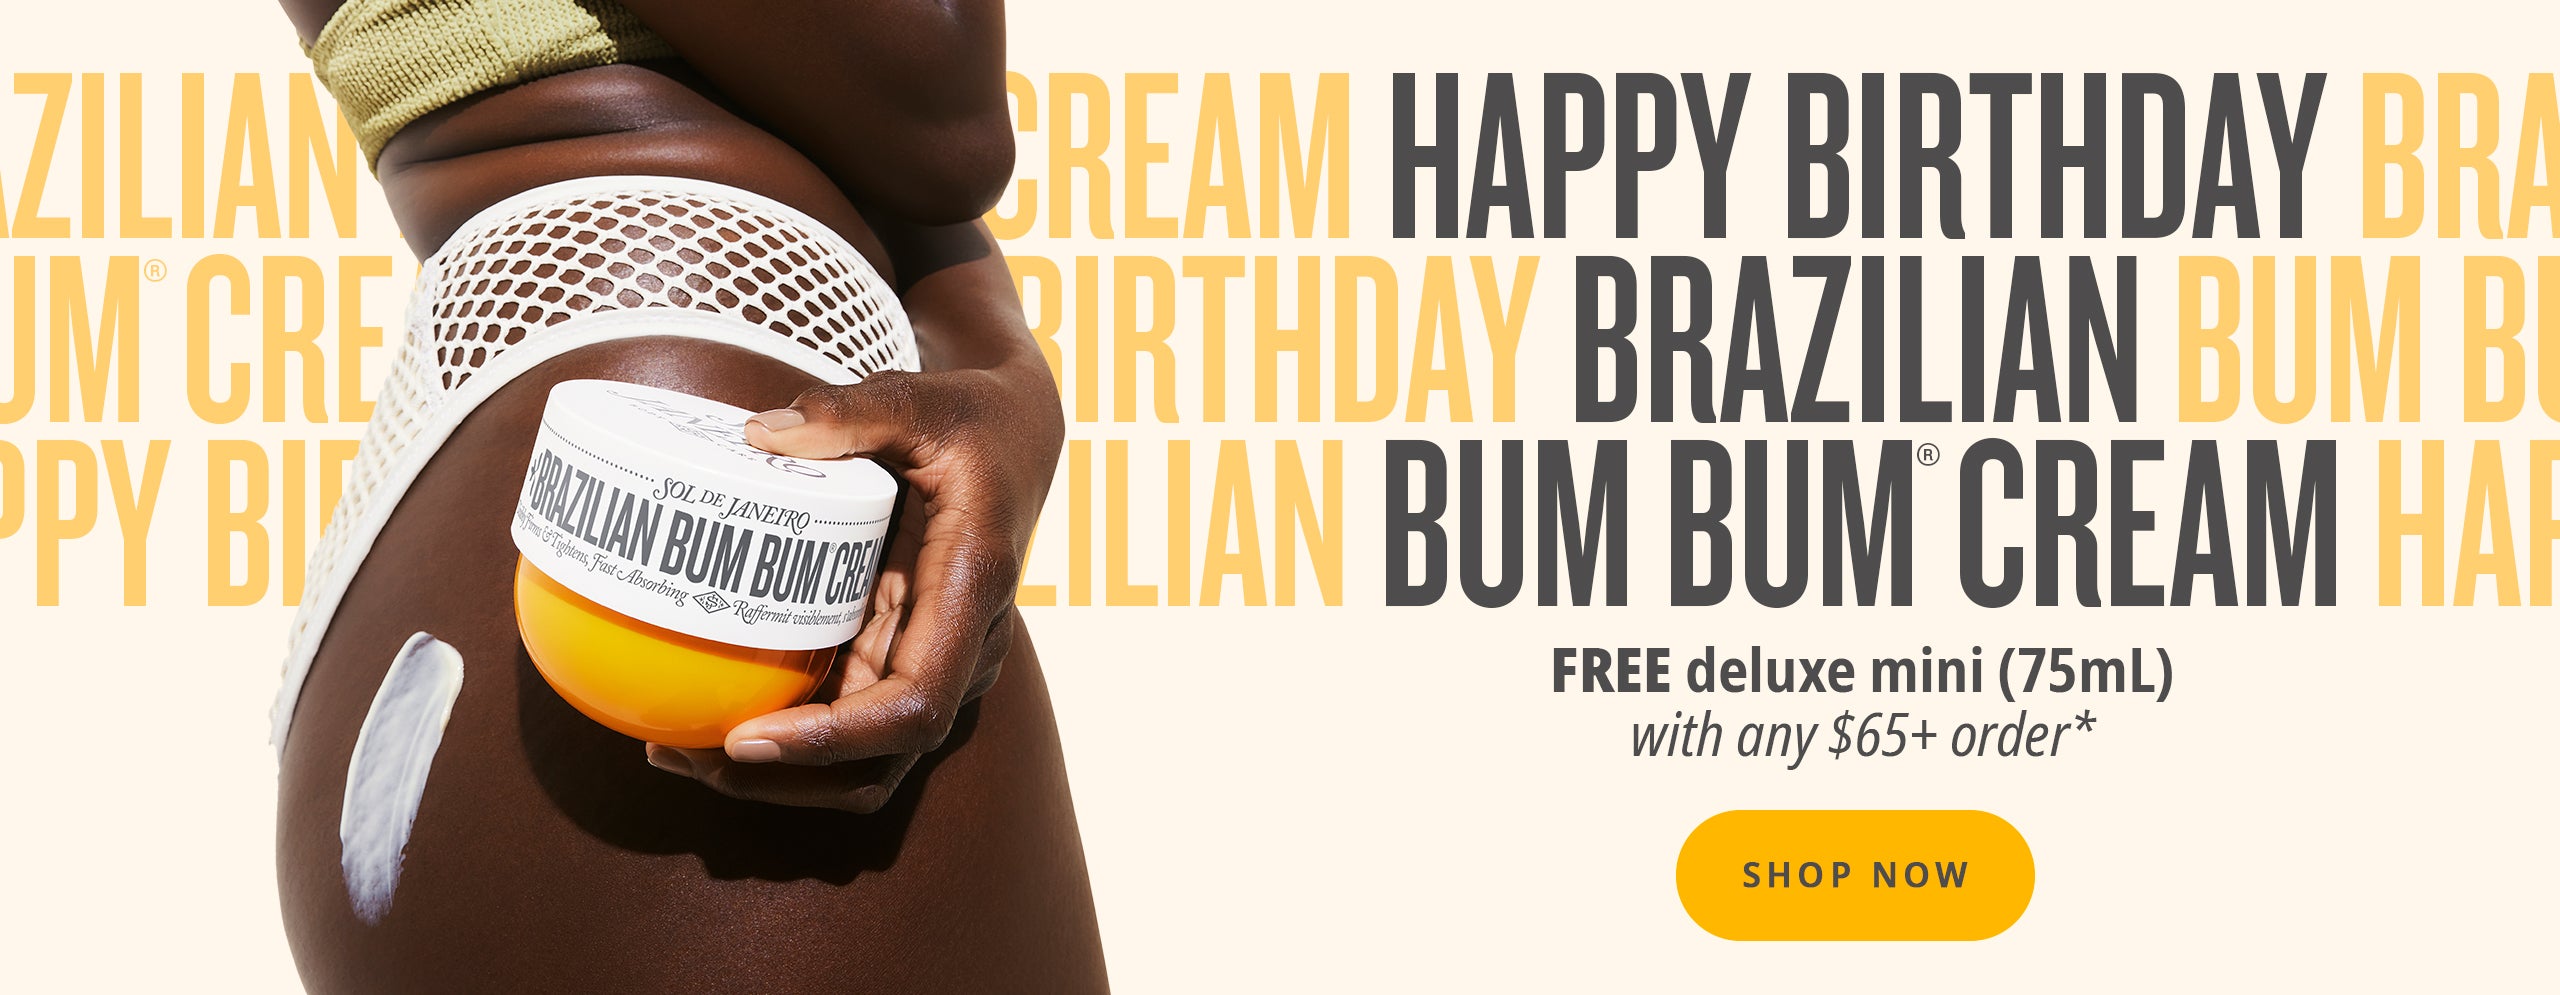 Happy Birthday Brazilian Bum Bum Cream, Free deluxe mini (75 mL) with any $65+ Order*